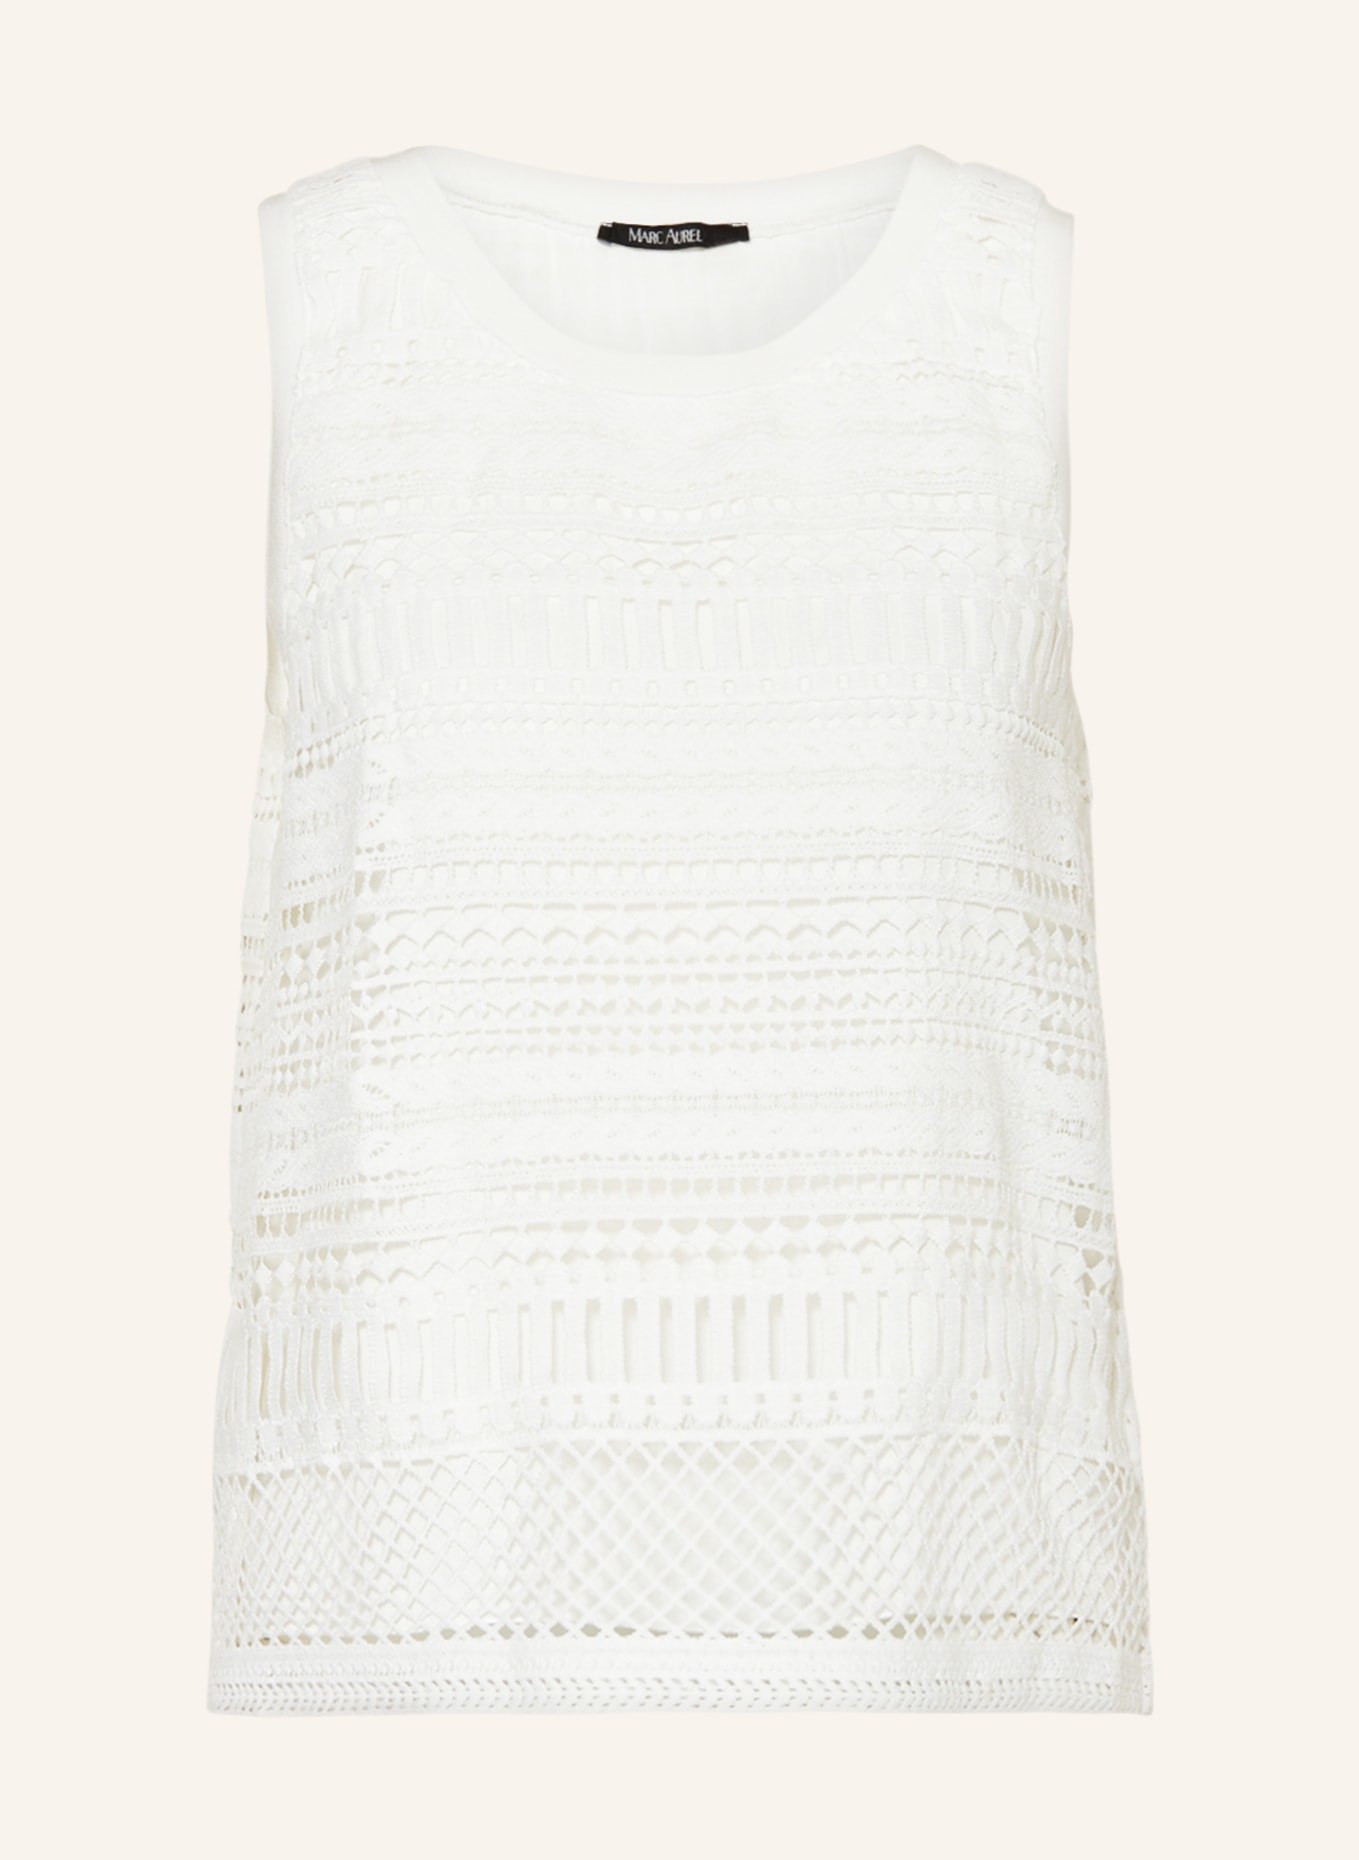 MARC AUREL Top with lace, Color: WHITE (Image 1)